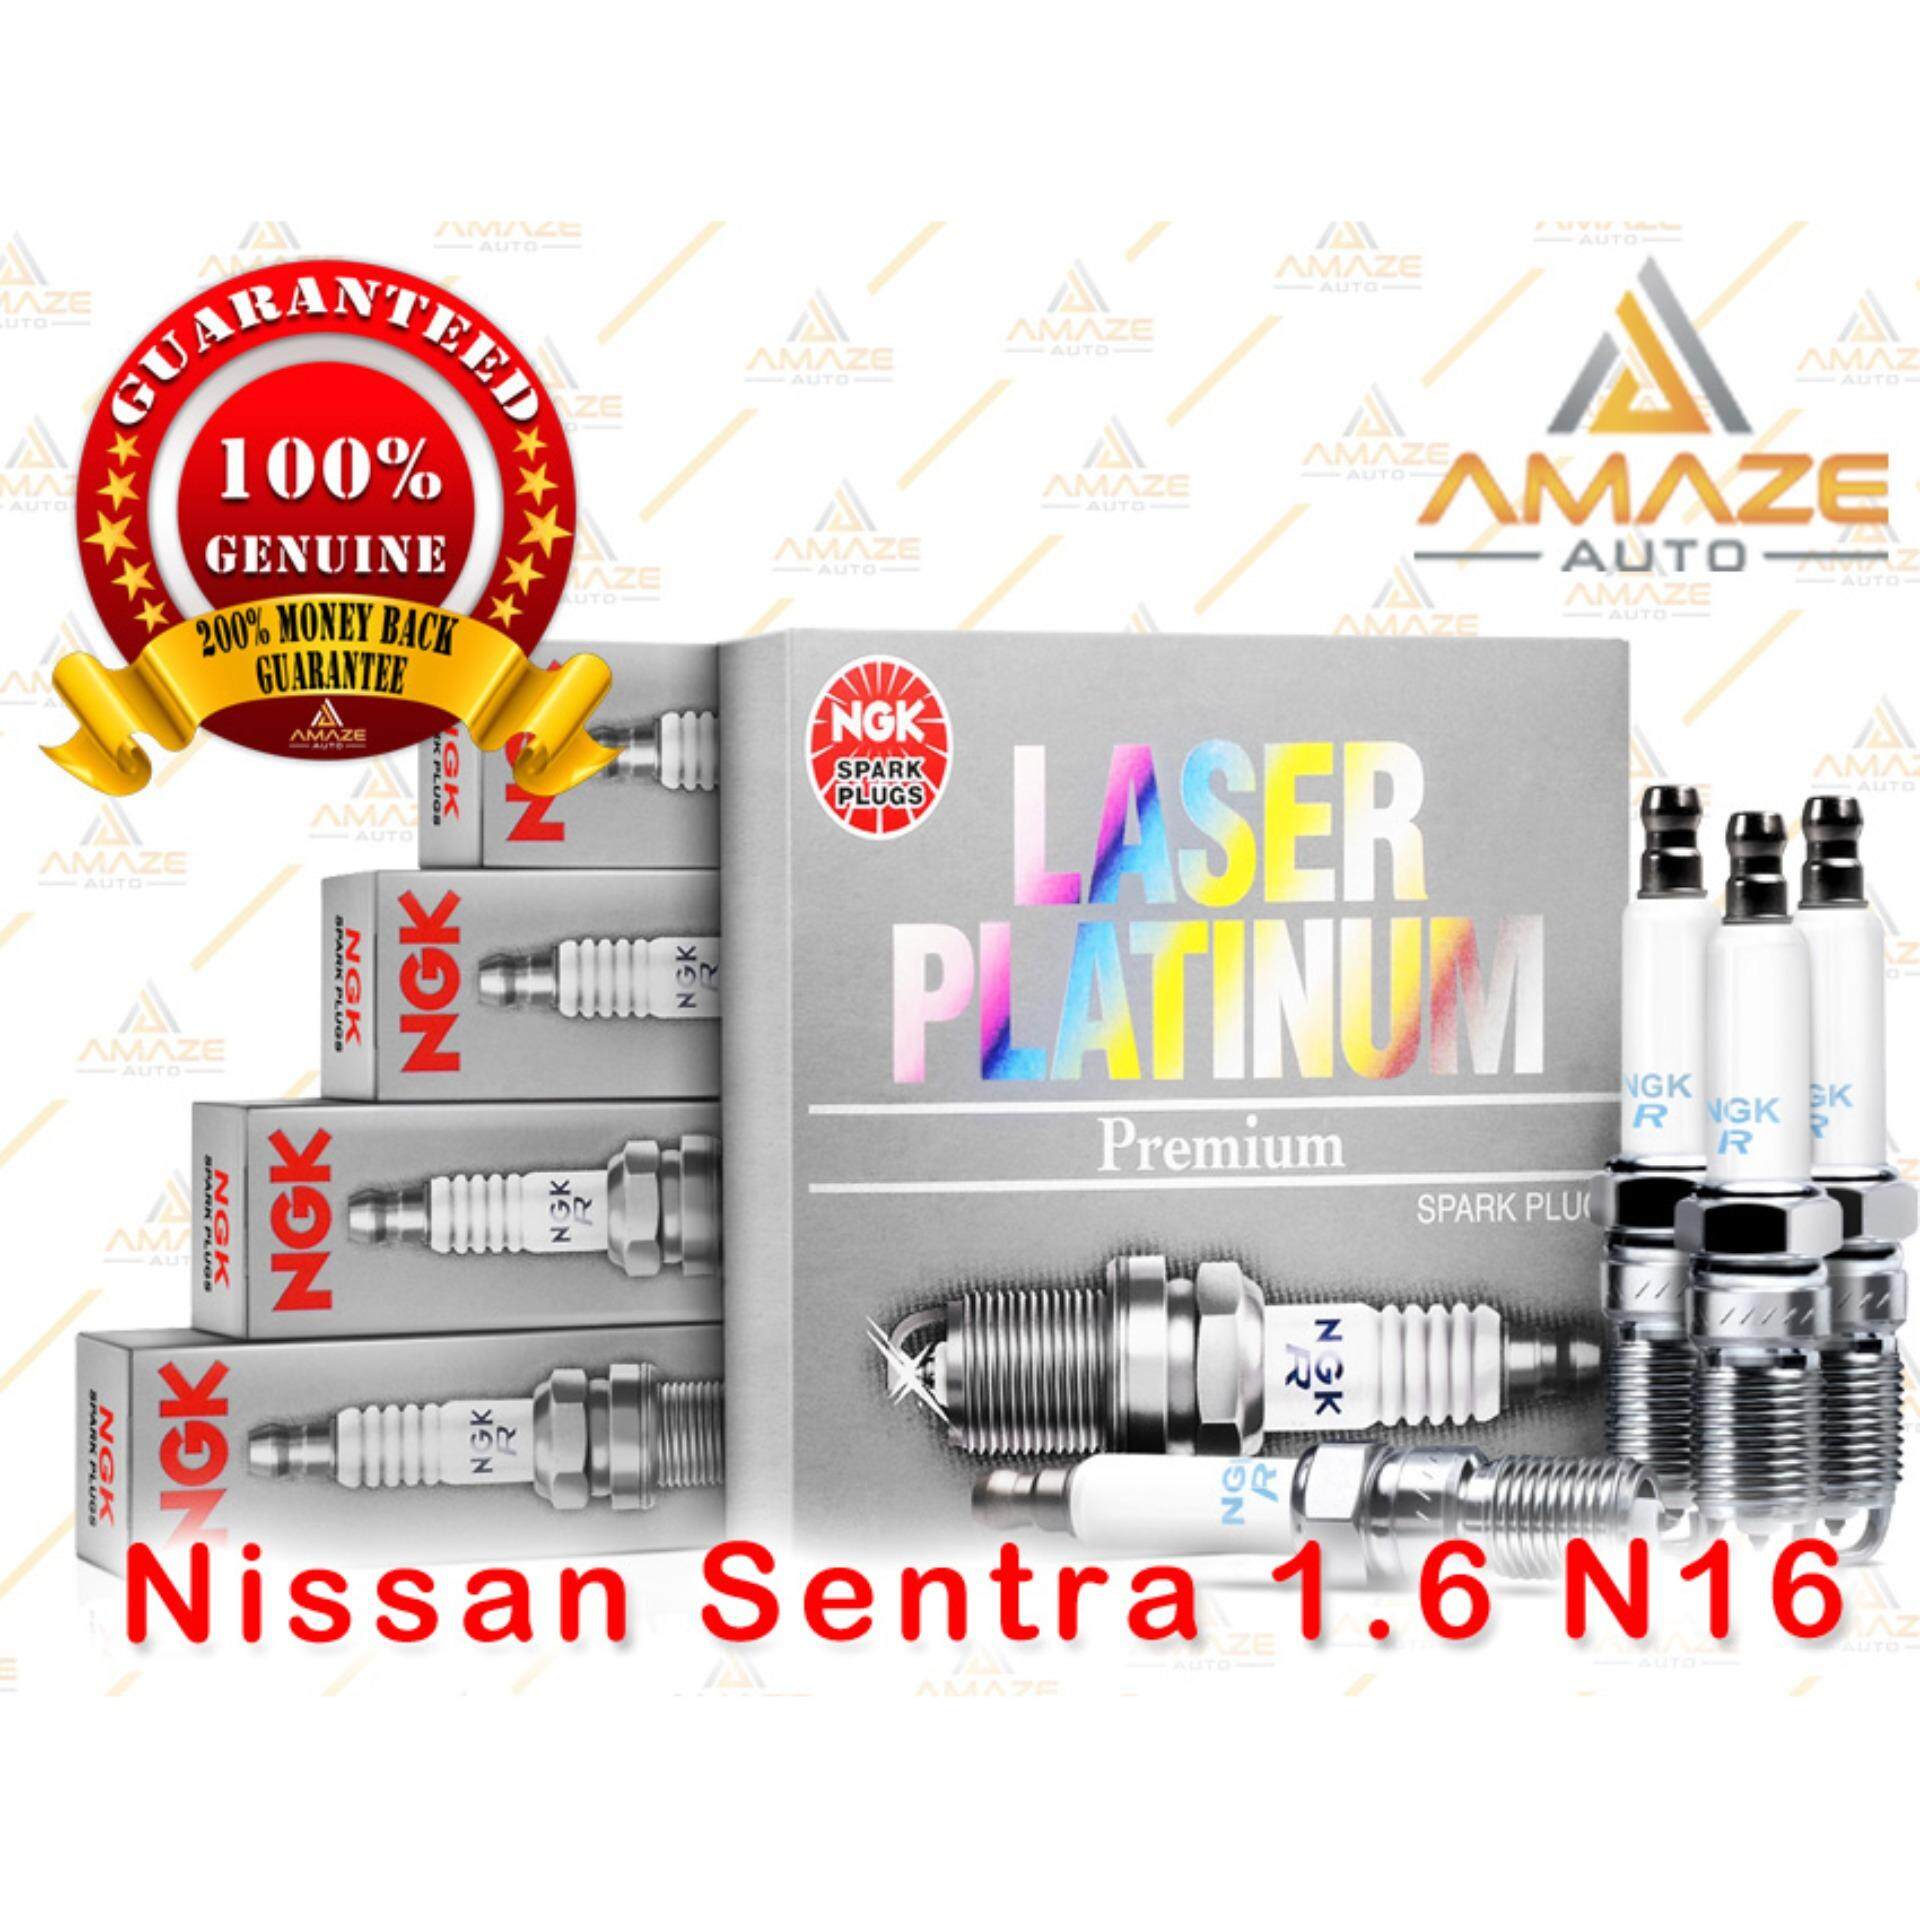 NGK Laser Platinum Spark Plug for Nissan Sentra 1.6 N16